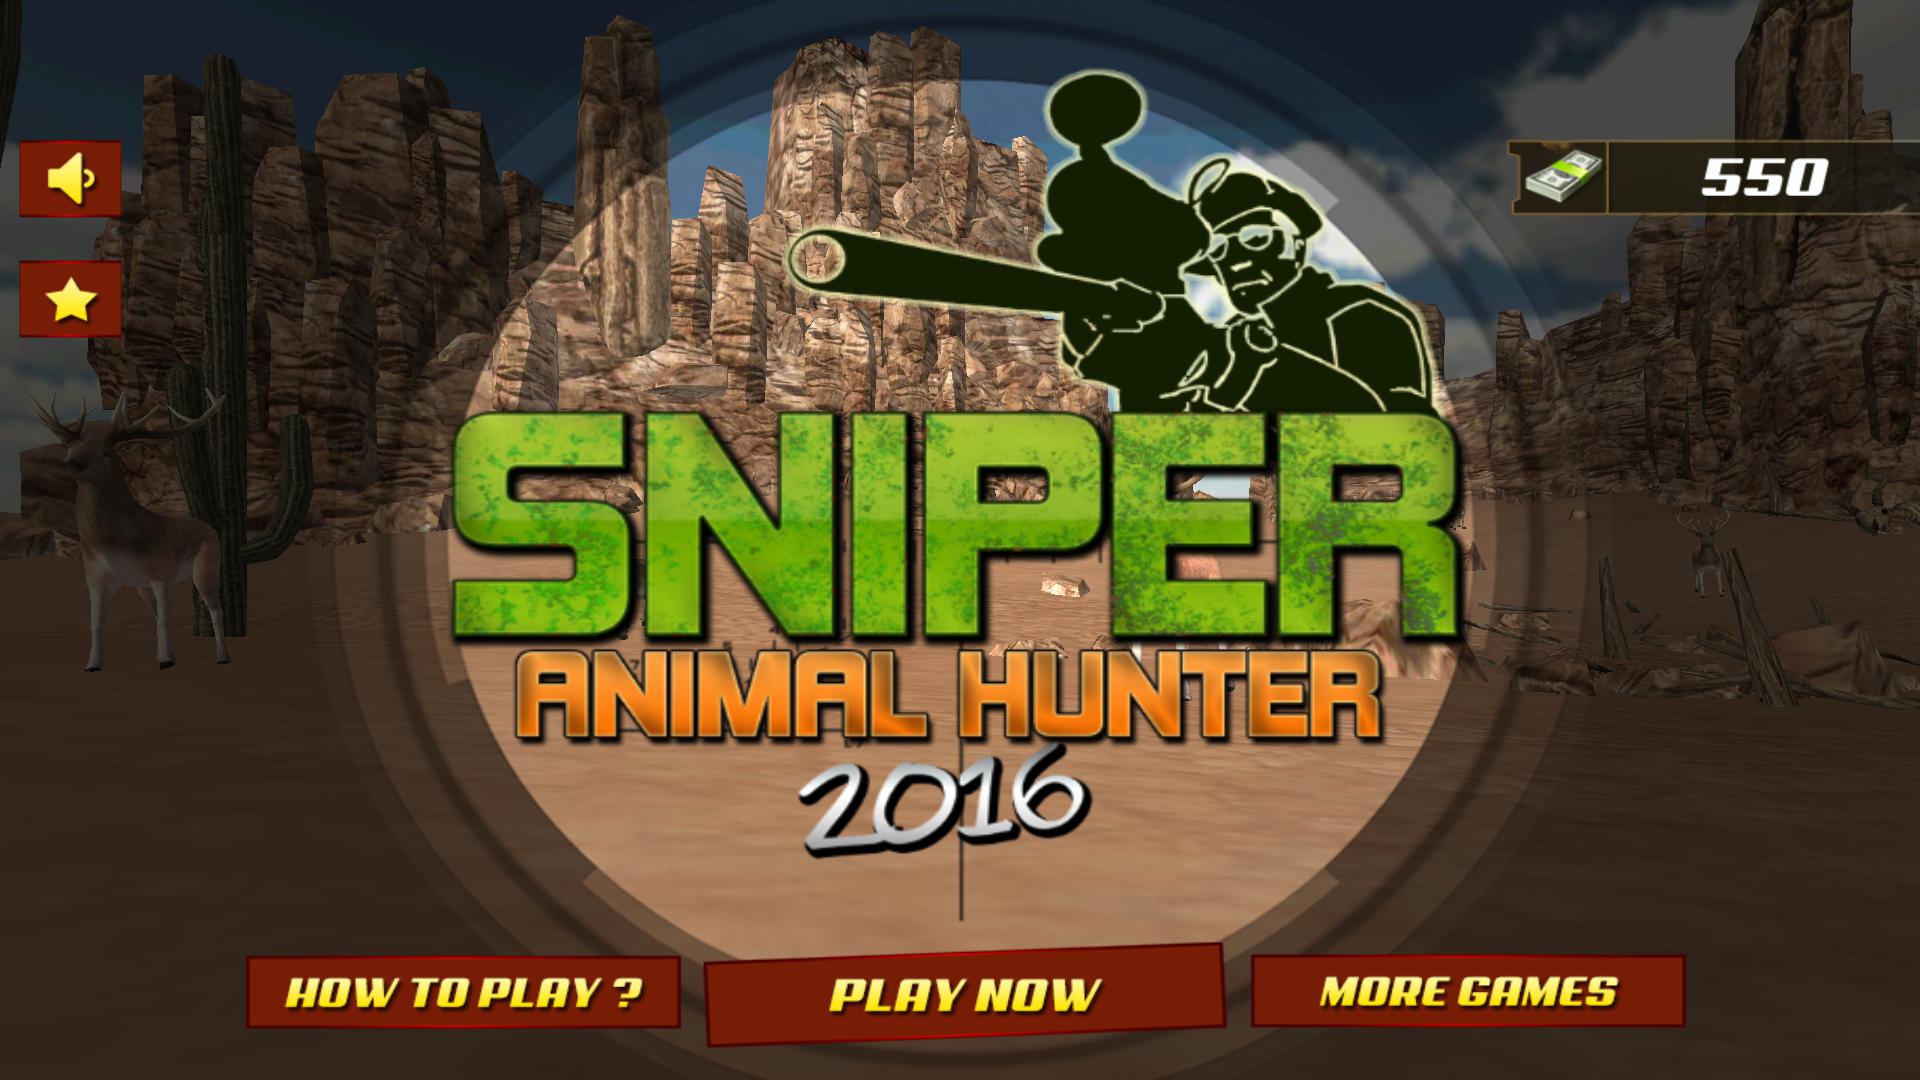 Sniper Animal Hunter 2016